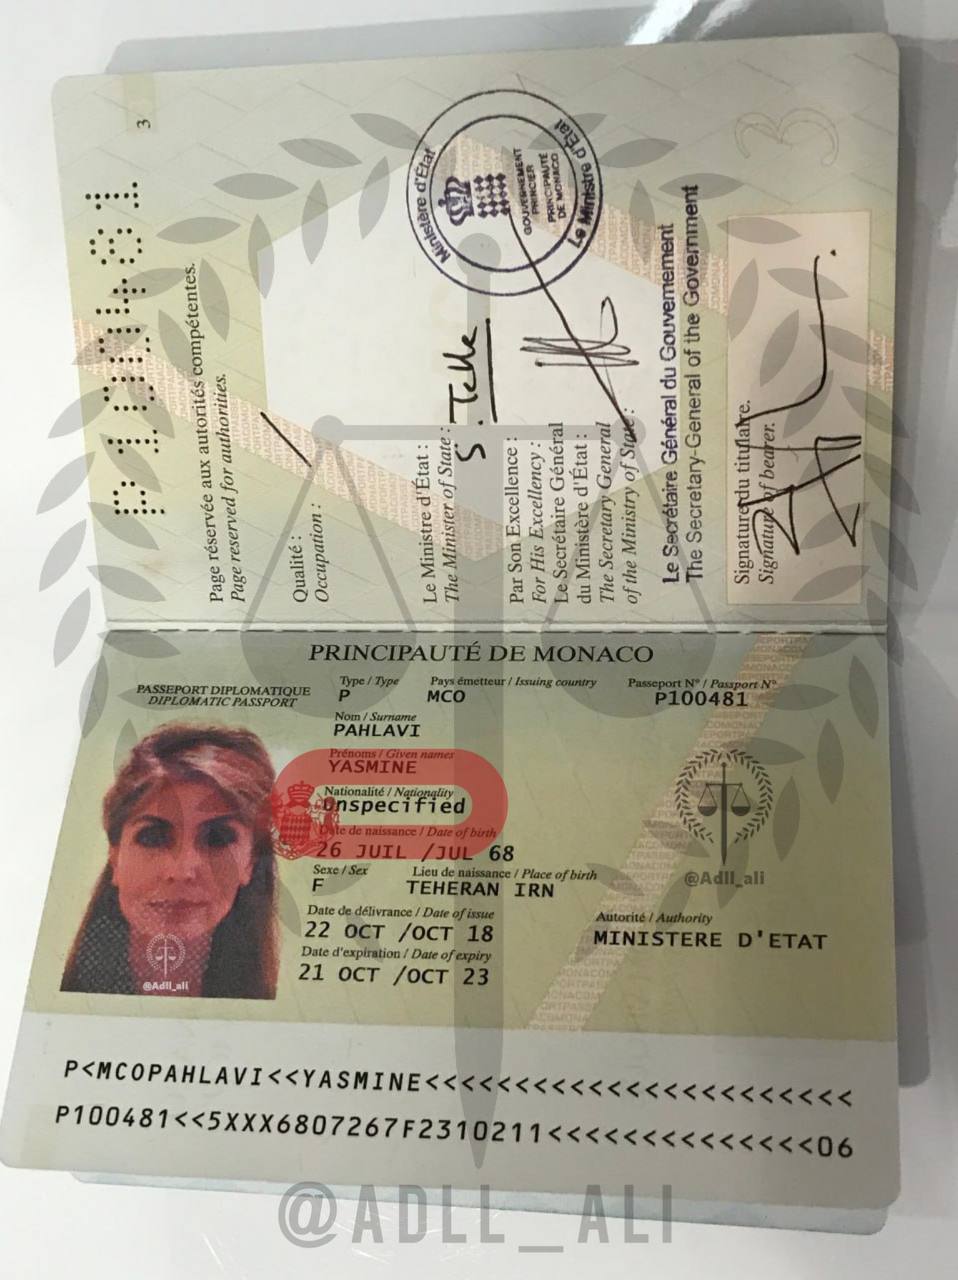 ادعای یک گروه هکری درباره گذرنامه رضا پهلوی